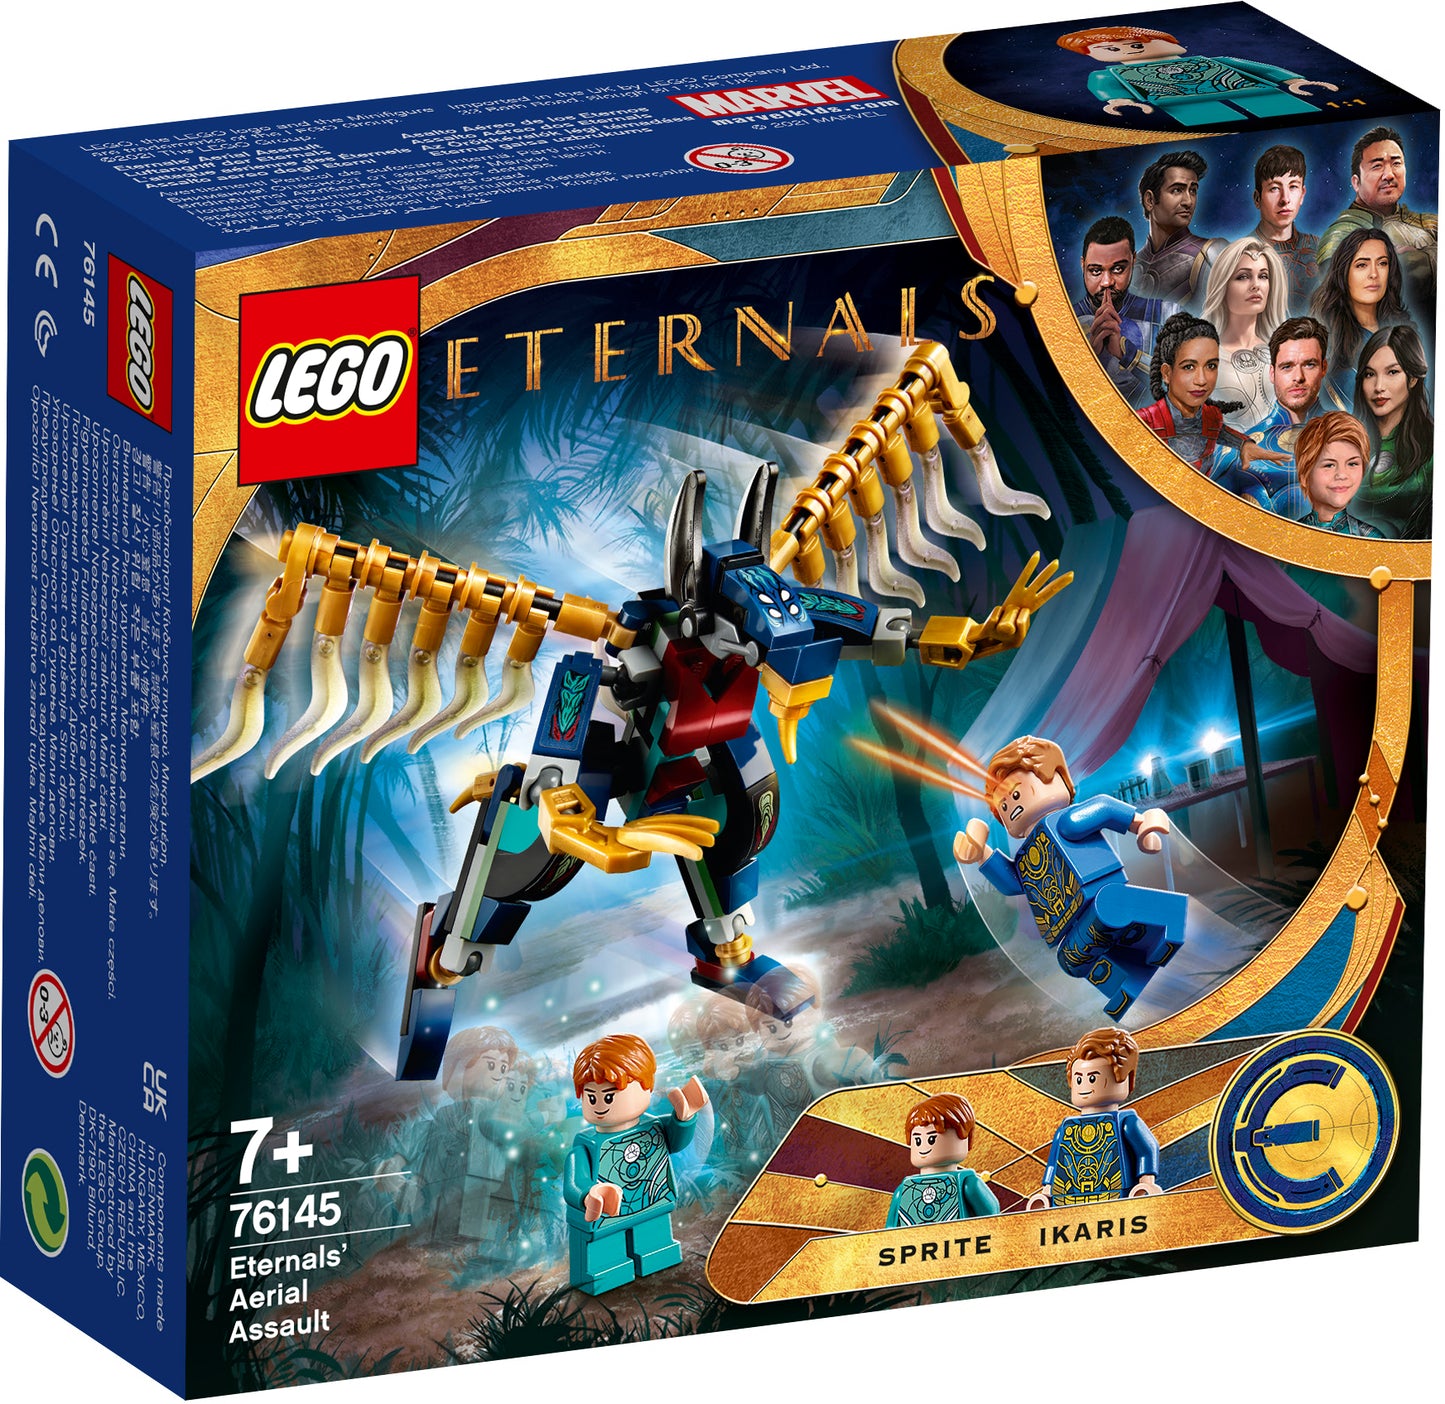 Eternal's Air Raid - LEGO Eternals